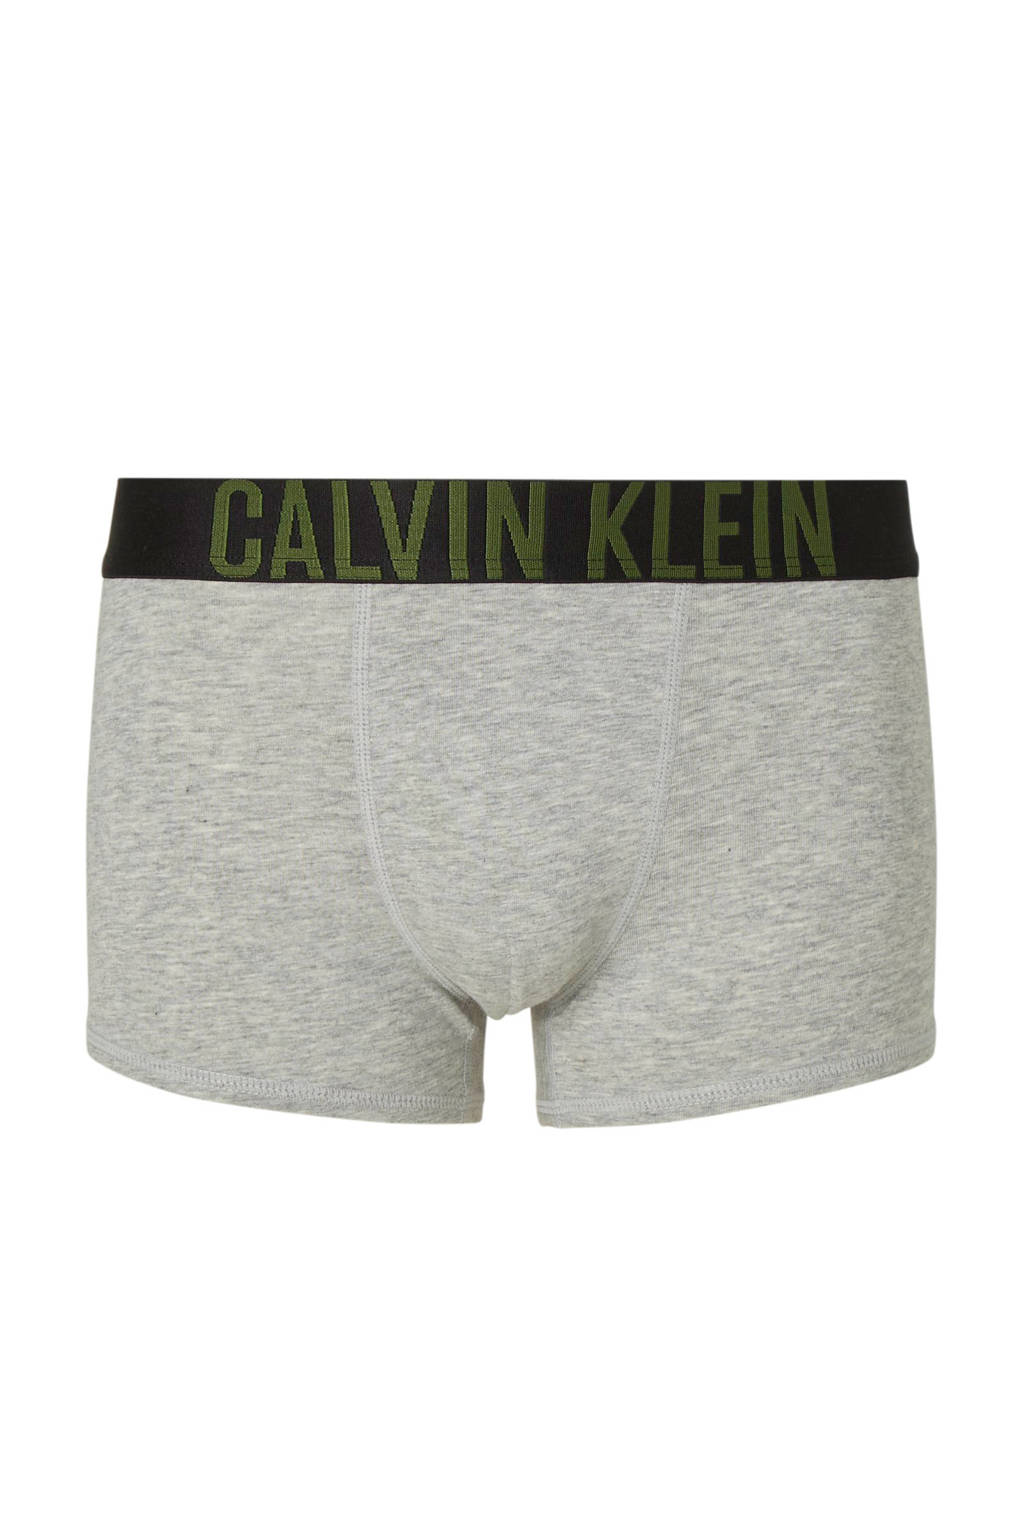 CALVIN KLEIN UNDERWEAR   boxershort - set van 2 donkergroen/grijs melange